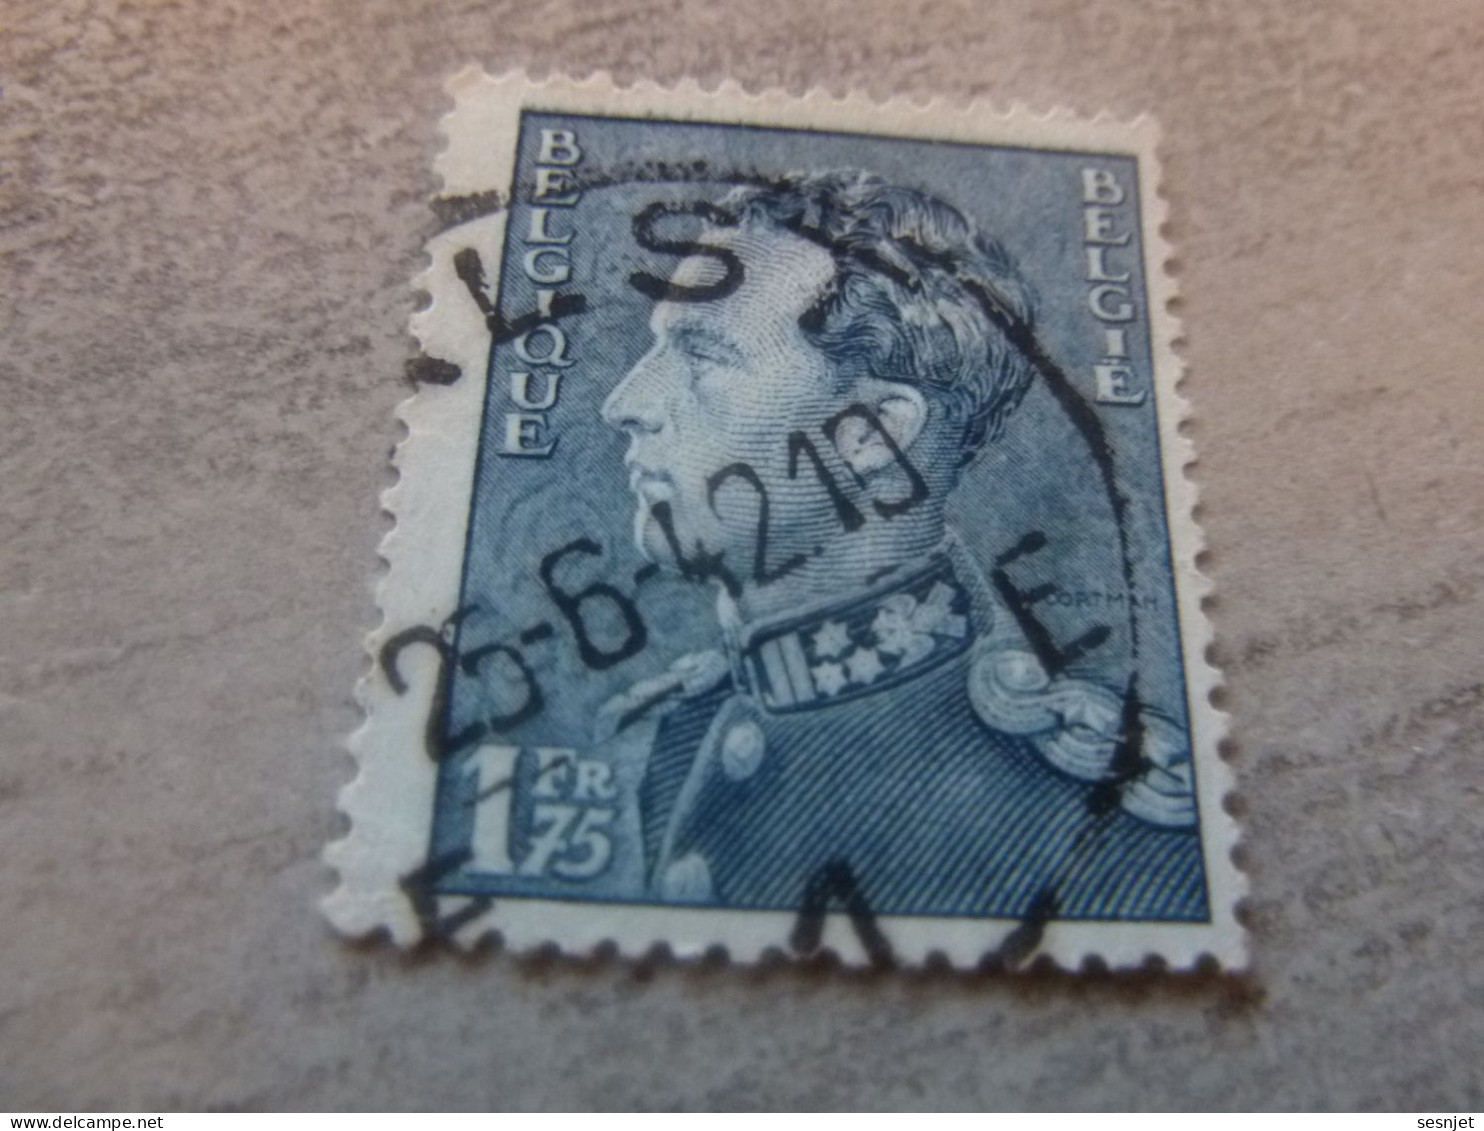 Belgique - Roi Léopold - 1f.75 - Bleu - Oblitéré - Année 1951 - - Used Stamps